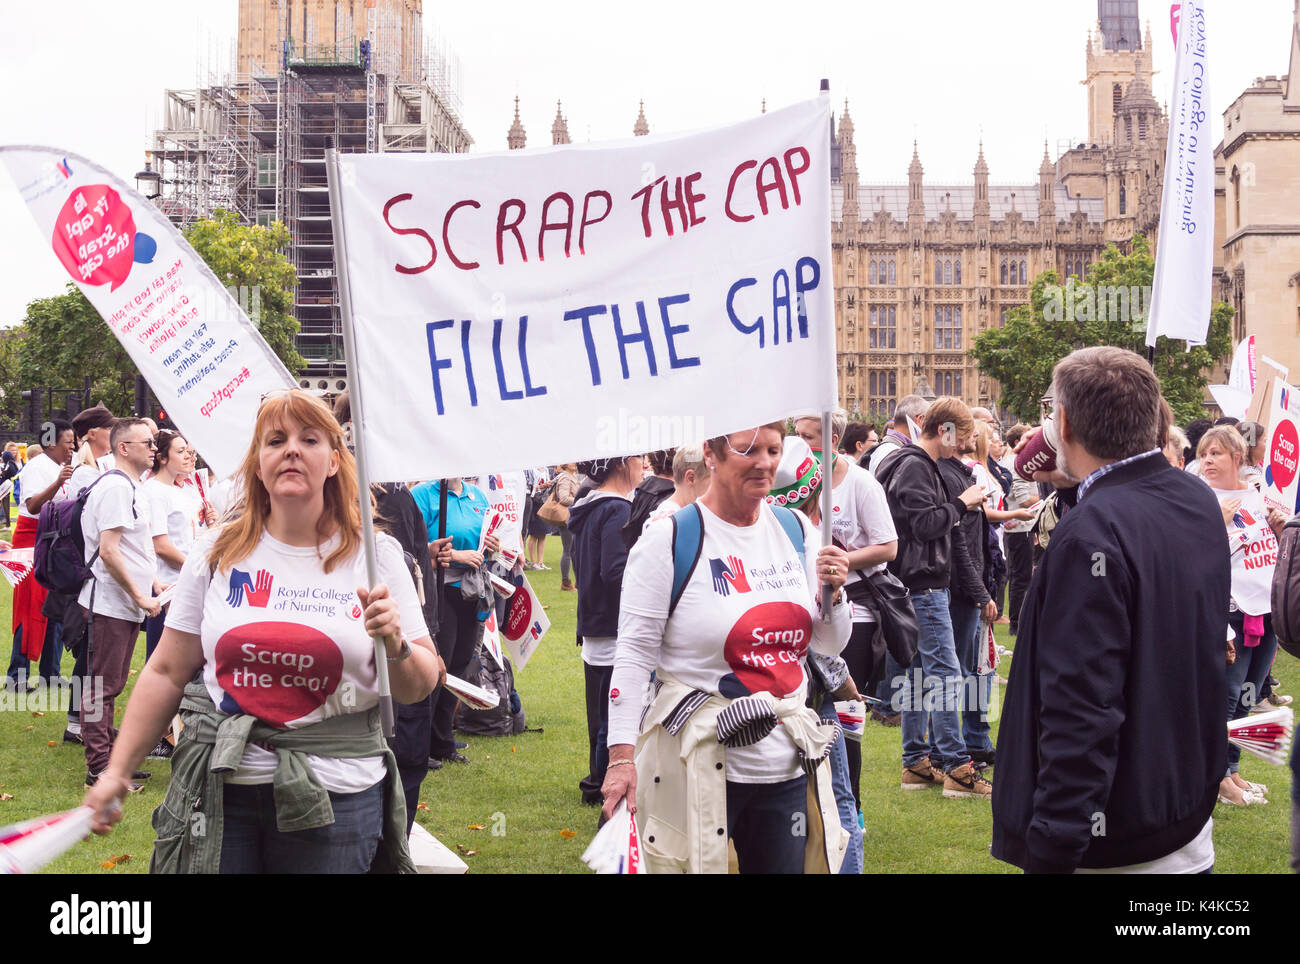 Londres, Royaume-Uni, 6 septembre 2017 des milliers d'infirmières, de membres du public et d'autres travailleurs de la santé de tout le Royaume-Uni se sont réunis sur la place du Parlement pour protester contre le plafond de rémunération du gouvernement. Bridget Catterall/Alamy Live News Banque D'Images